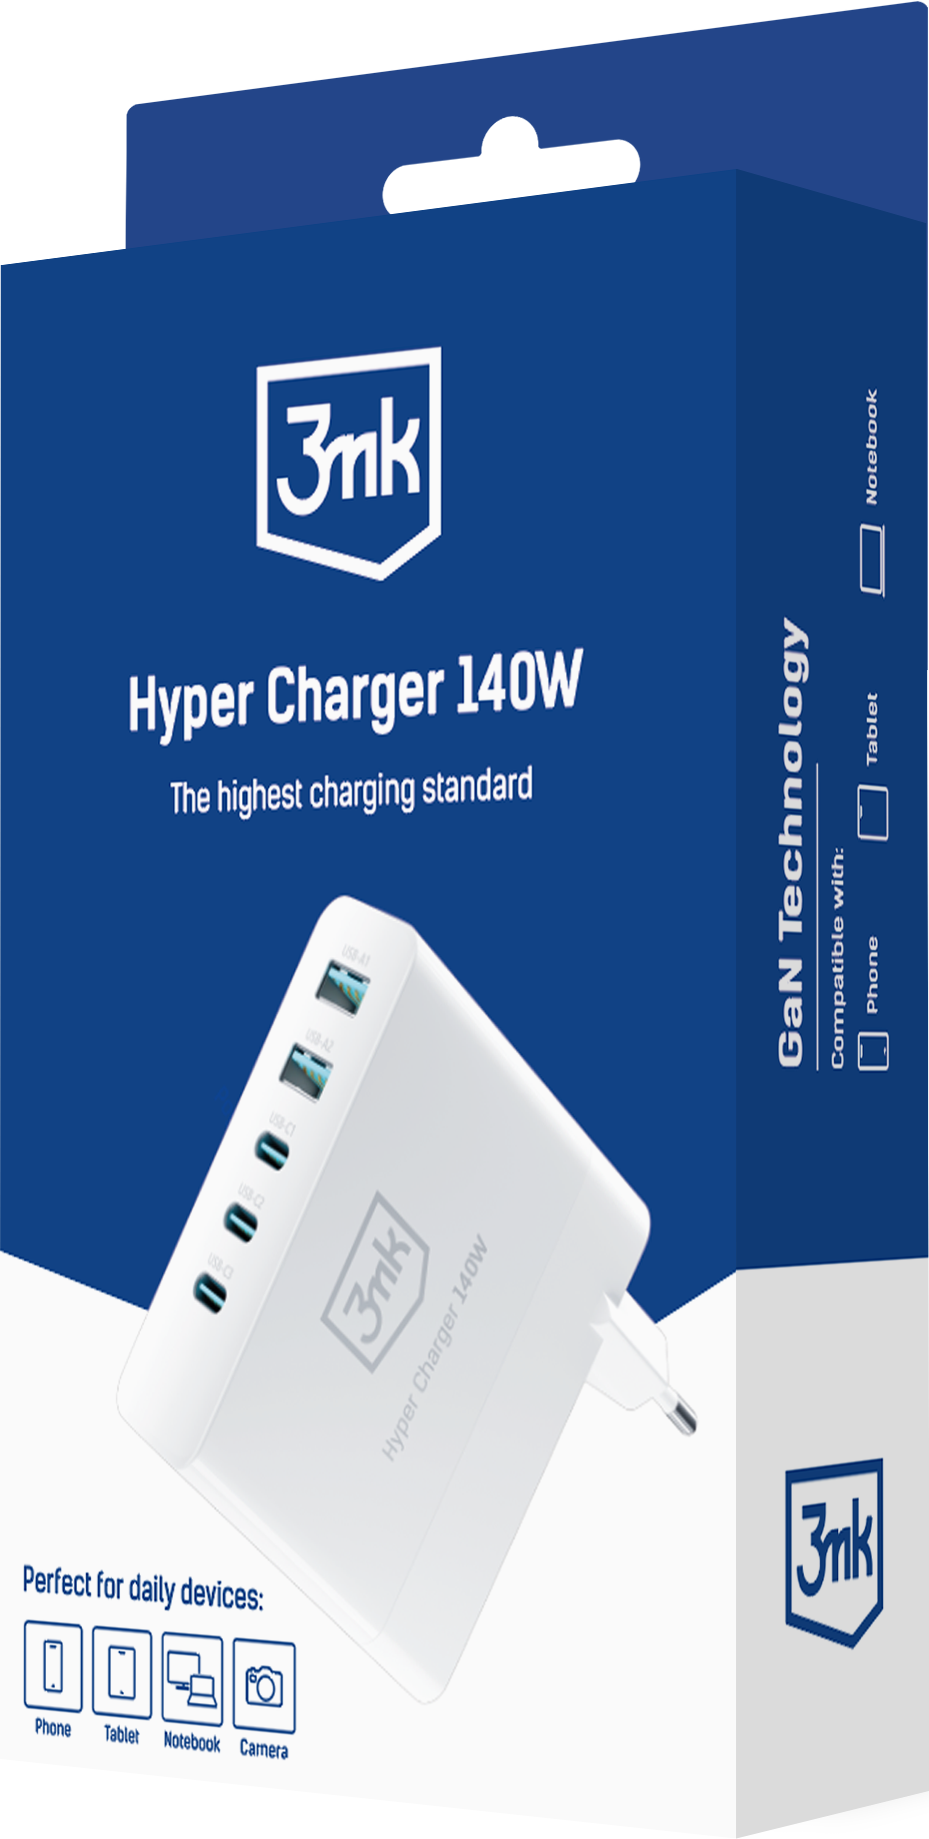 3mk-packshot-Hyper-Charger-140W-v2